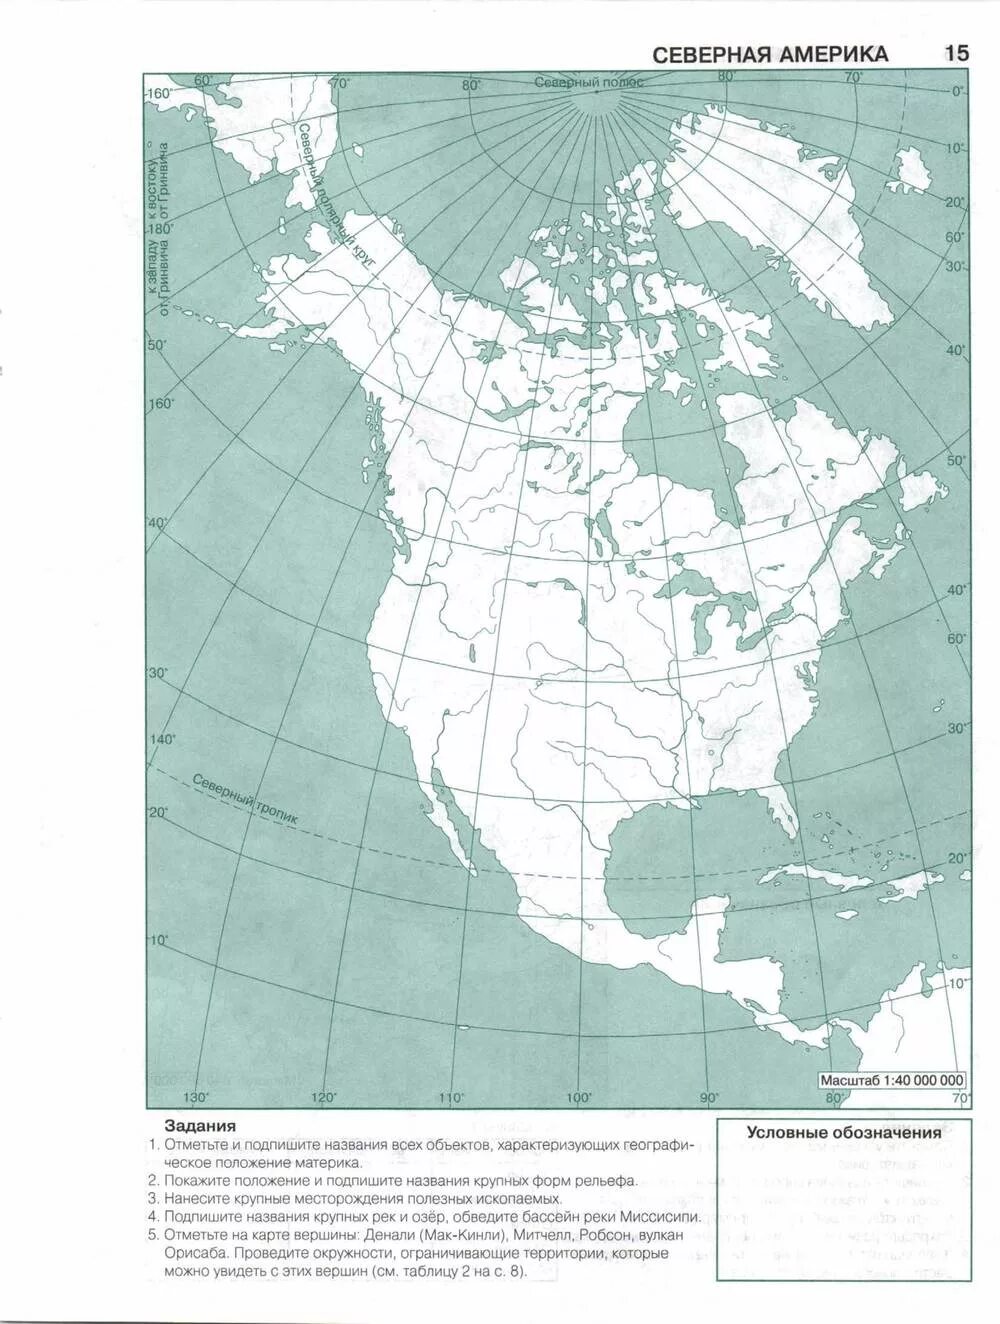 Практическая работа северная америка 7. География 7 класс контурные карты Полярная звезда Северная Америка. Физическая карта Северной Америки 7 класс география контурная карта. Контурная карта по географии 7 класс Северная Америка с 7. Политическая карта Северной Америки 7 класс контурная карта.